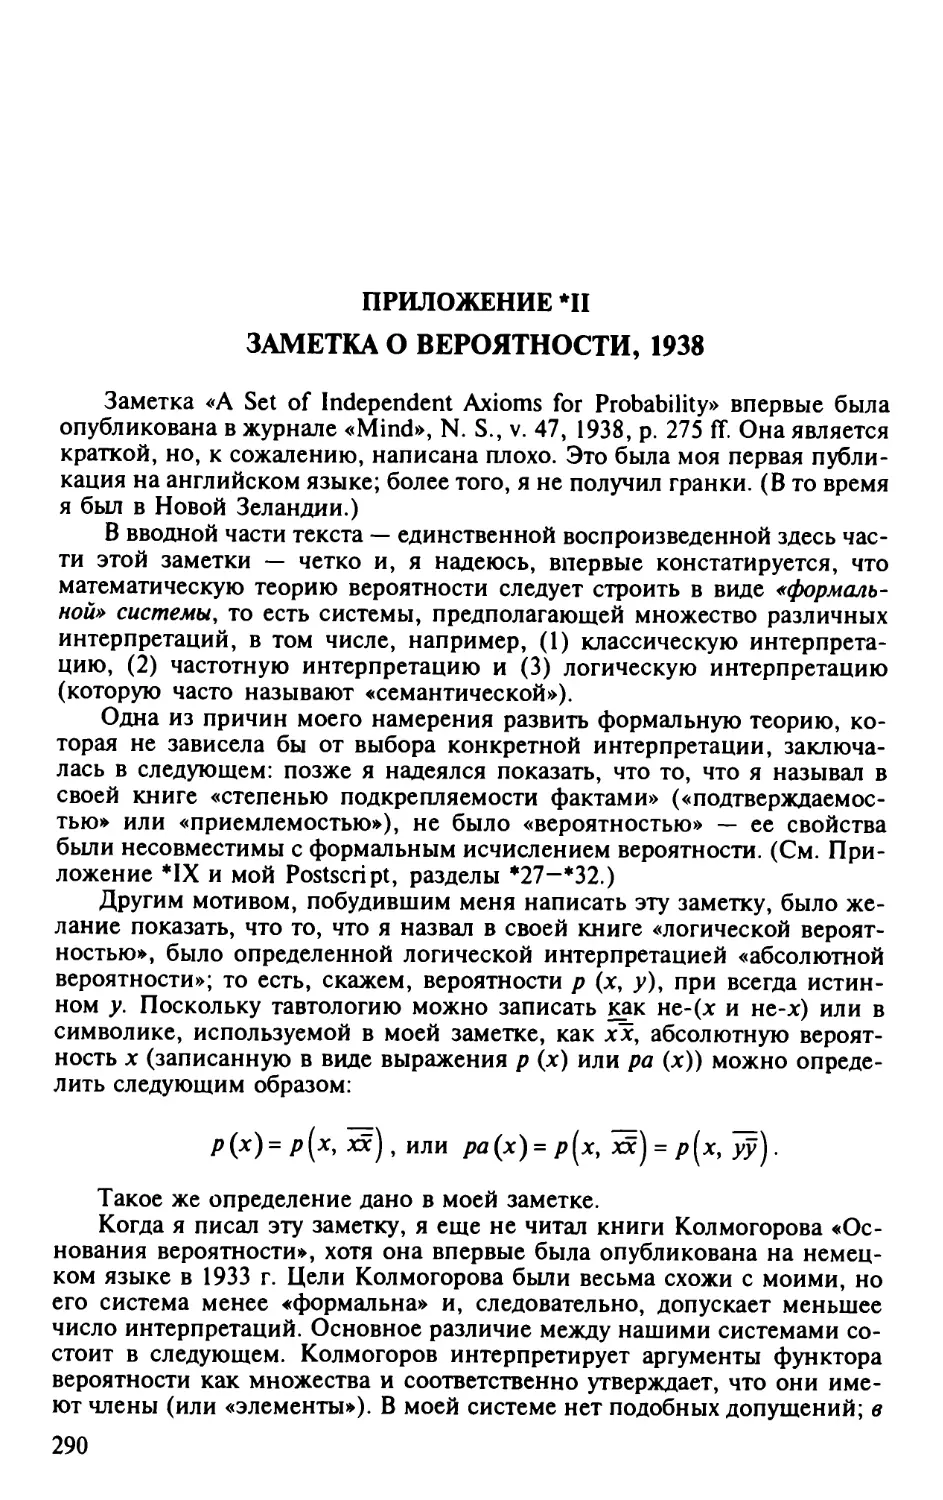 II. Заметка о вероятности, 1938